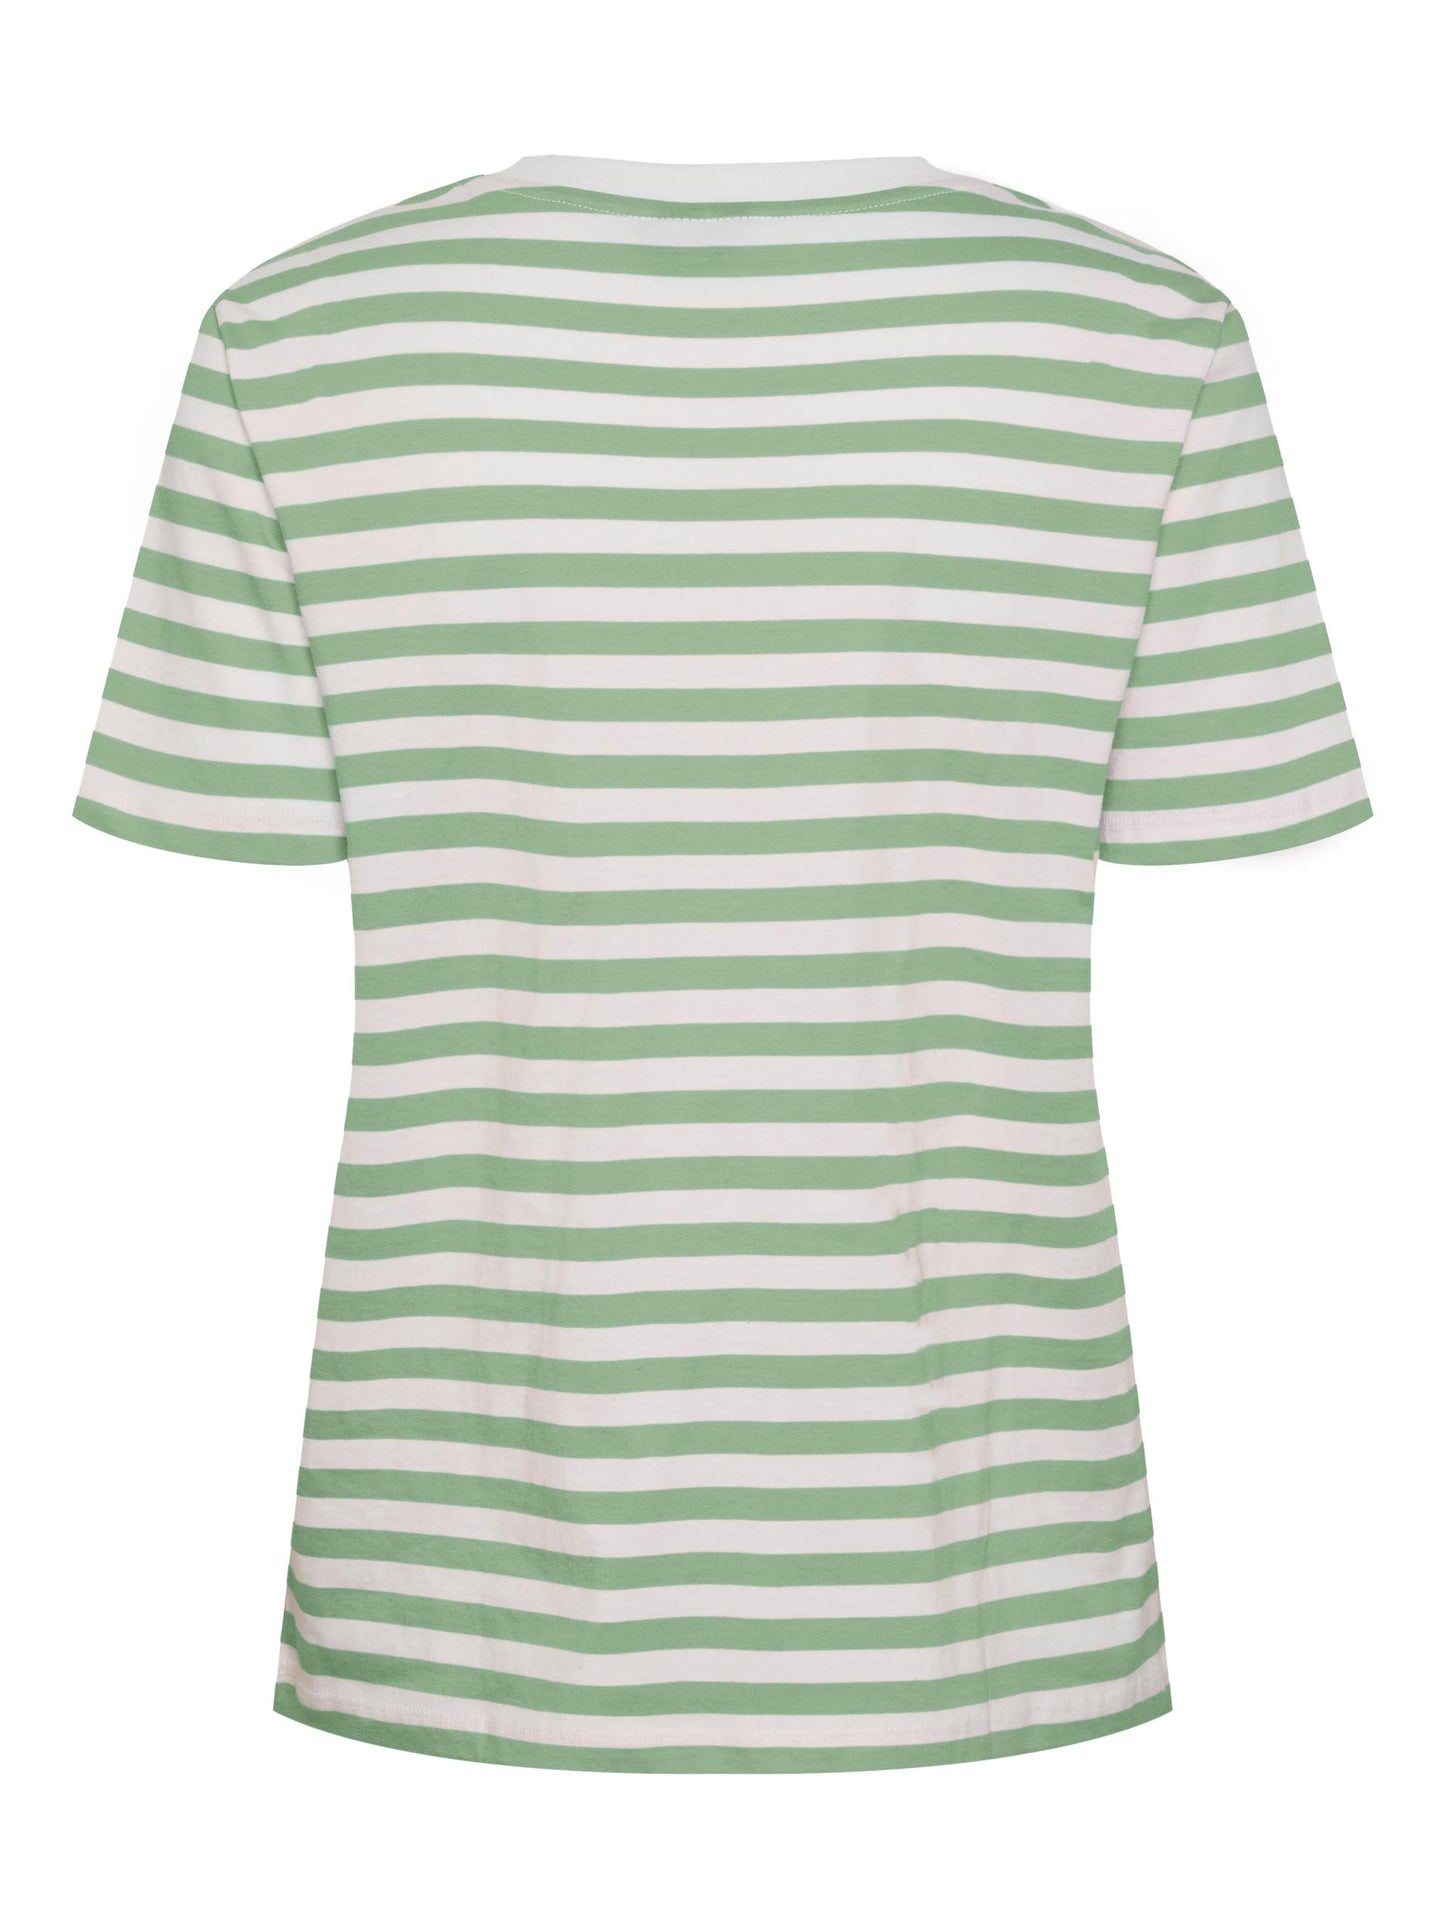 
                  
                    PCRIA Quiet Green T-Shirt
                  
                